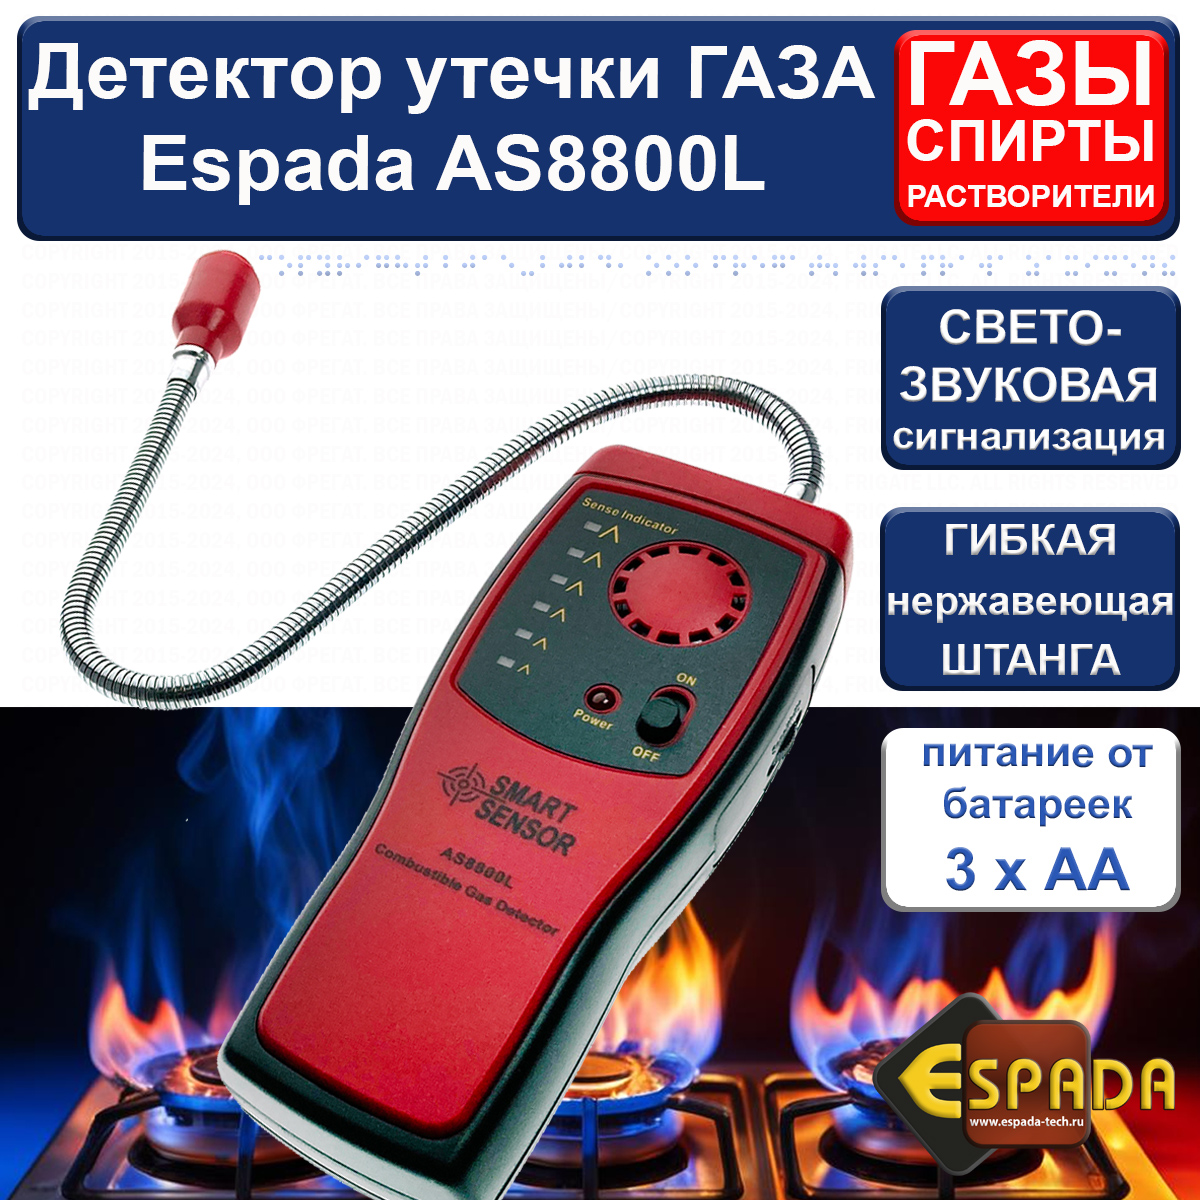 анализатор качества воды espada tds 2 pen Детектор утечки газа Espada AS8800L